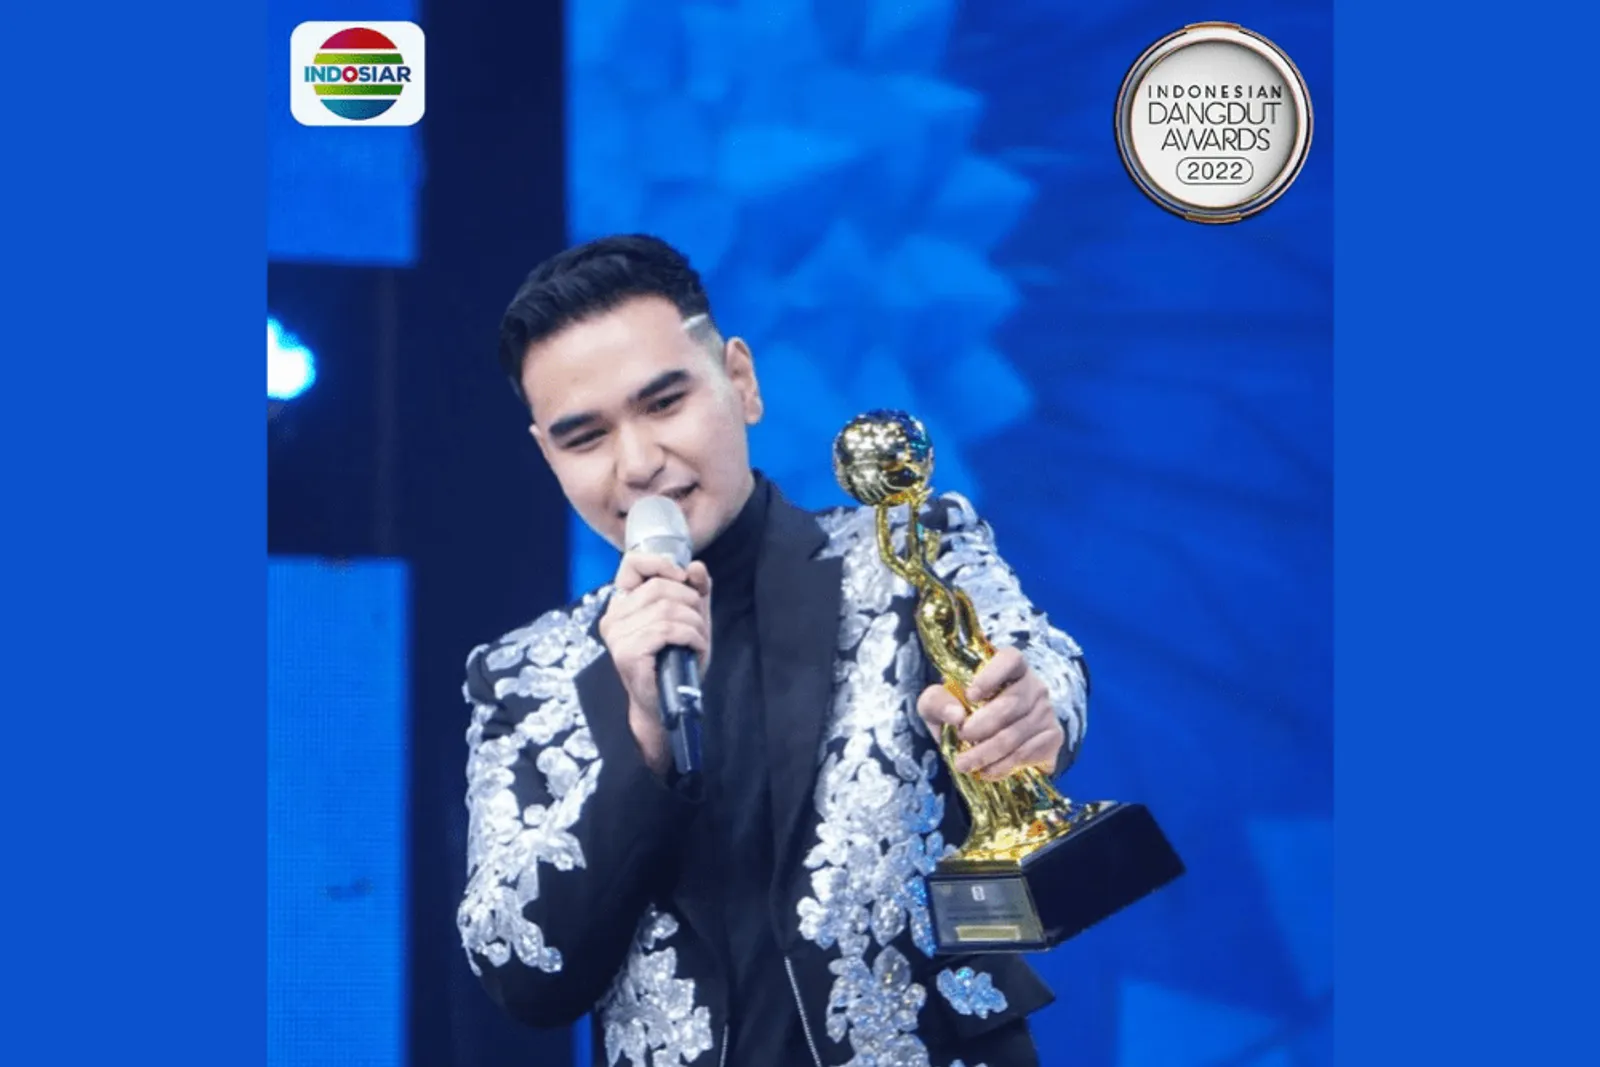 Daftar 12 Pemenang Indonesia Dangdut Awards 2022!